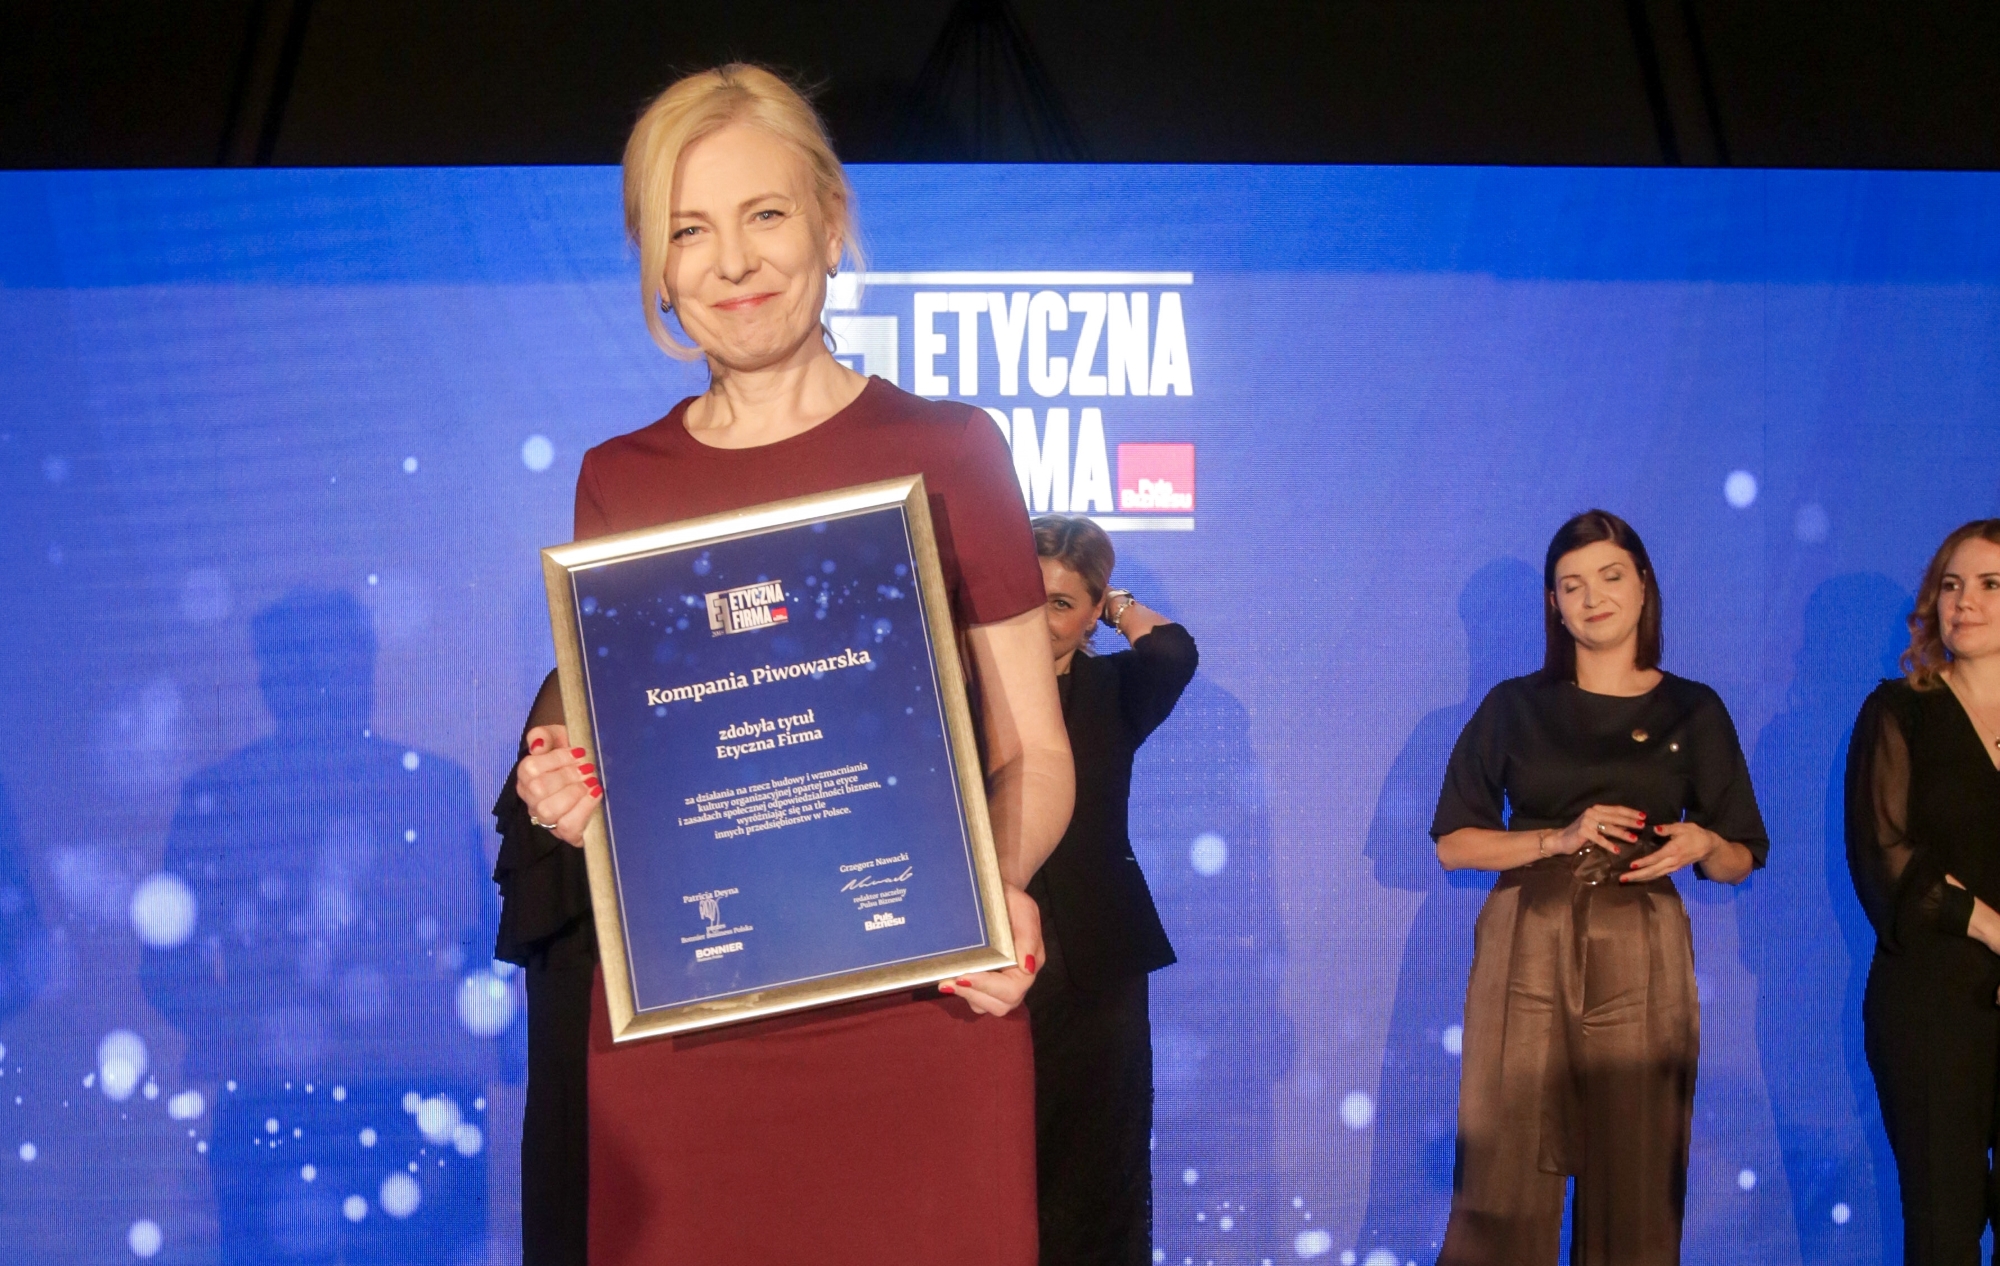 Kompania Piwowarska wśród laureatów konkursu Etyczna Firma 2018